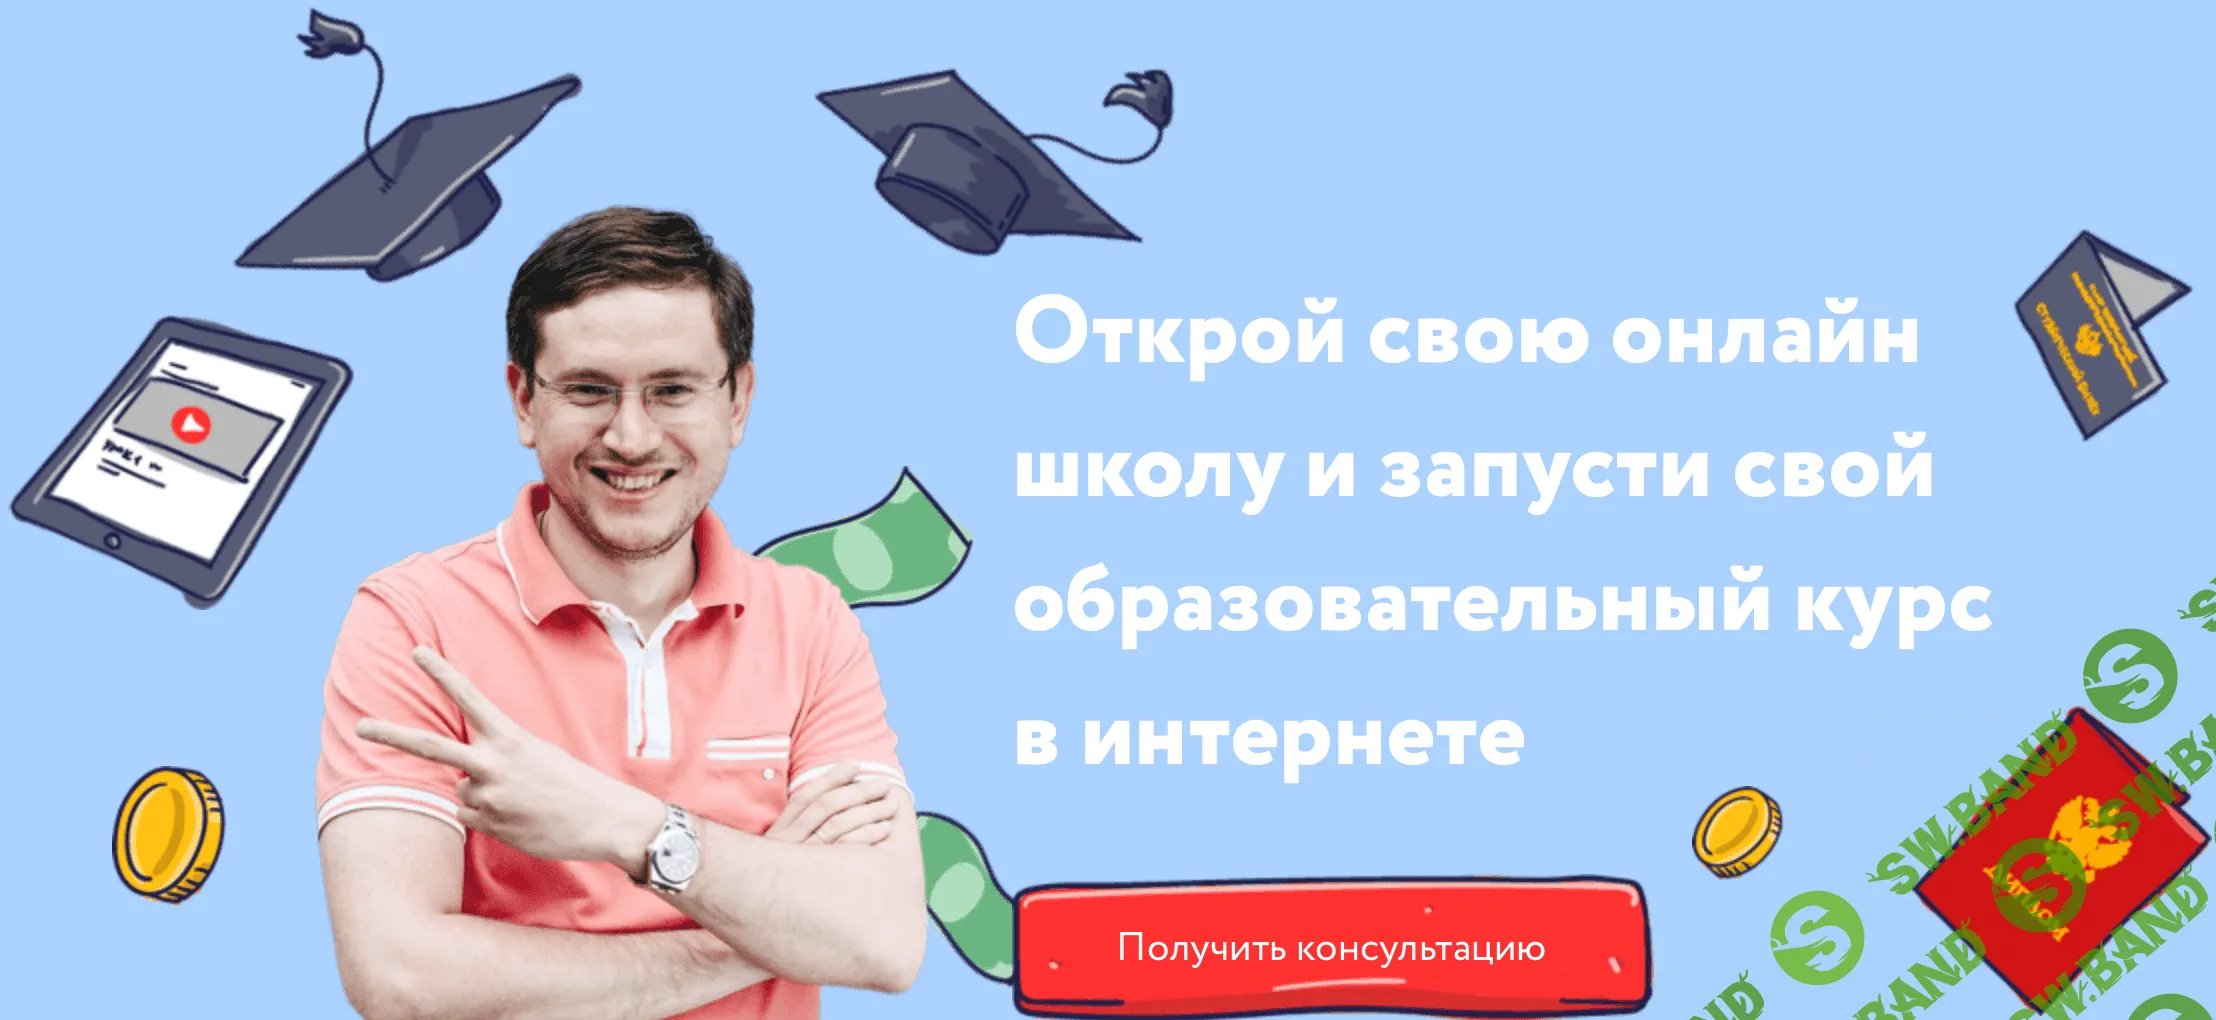 [Денис Мидаков] Быстрый запуск онлайн-школы (2019)